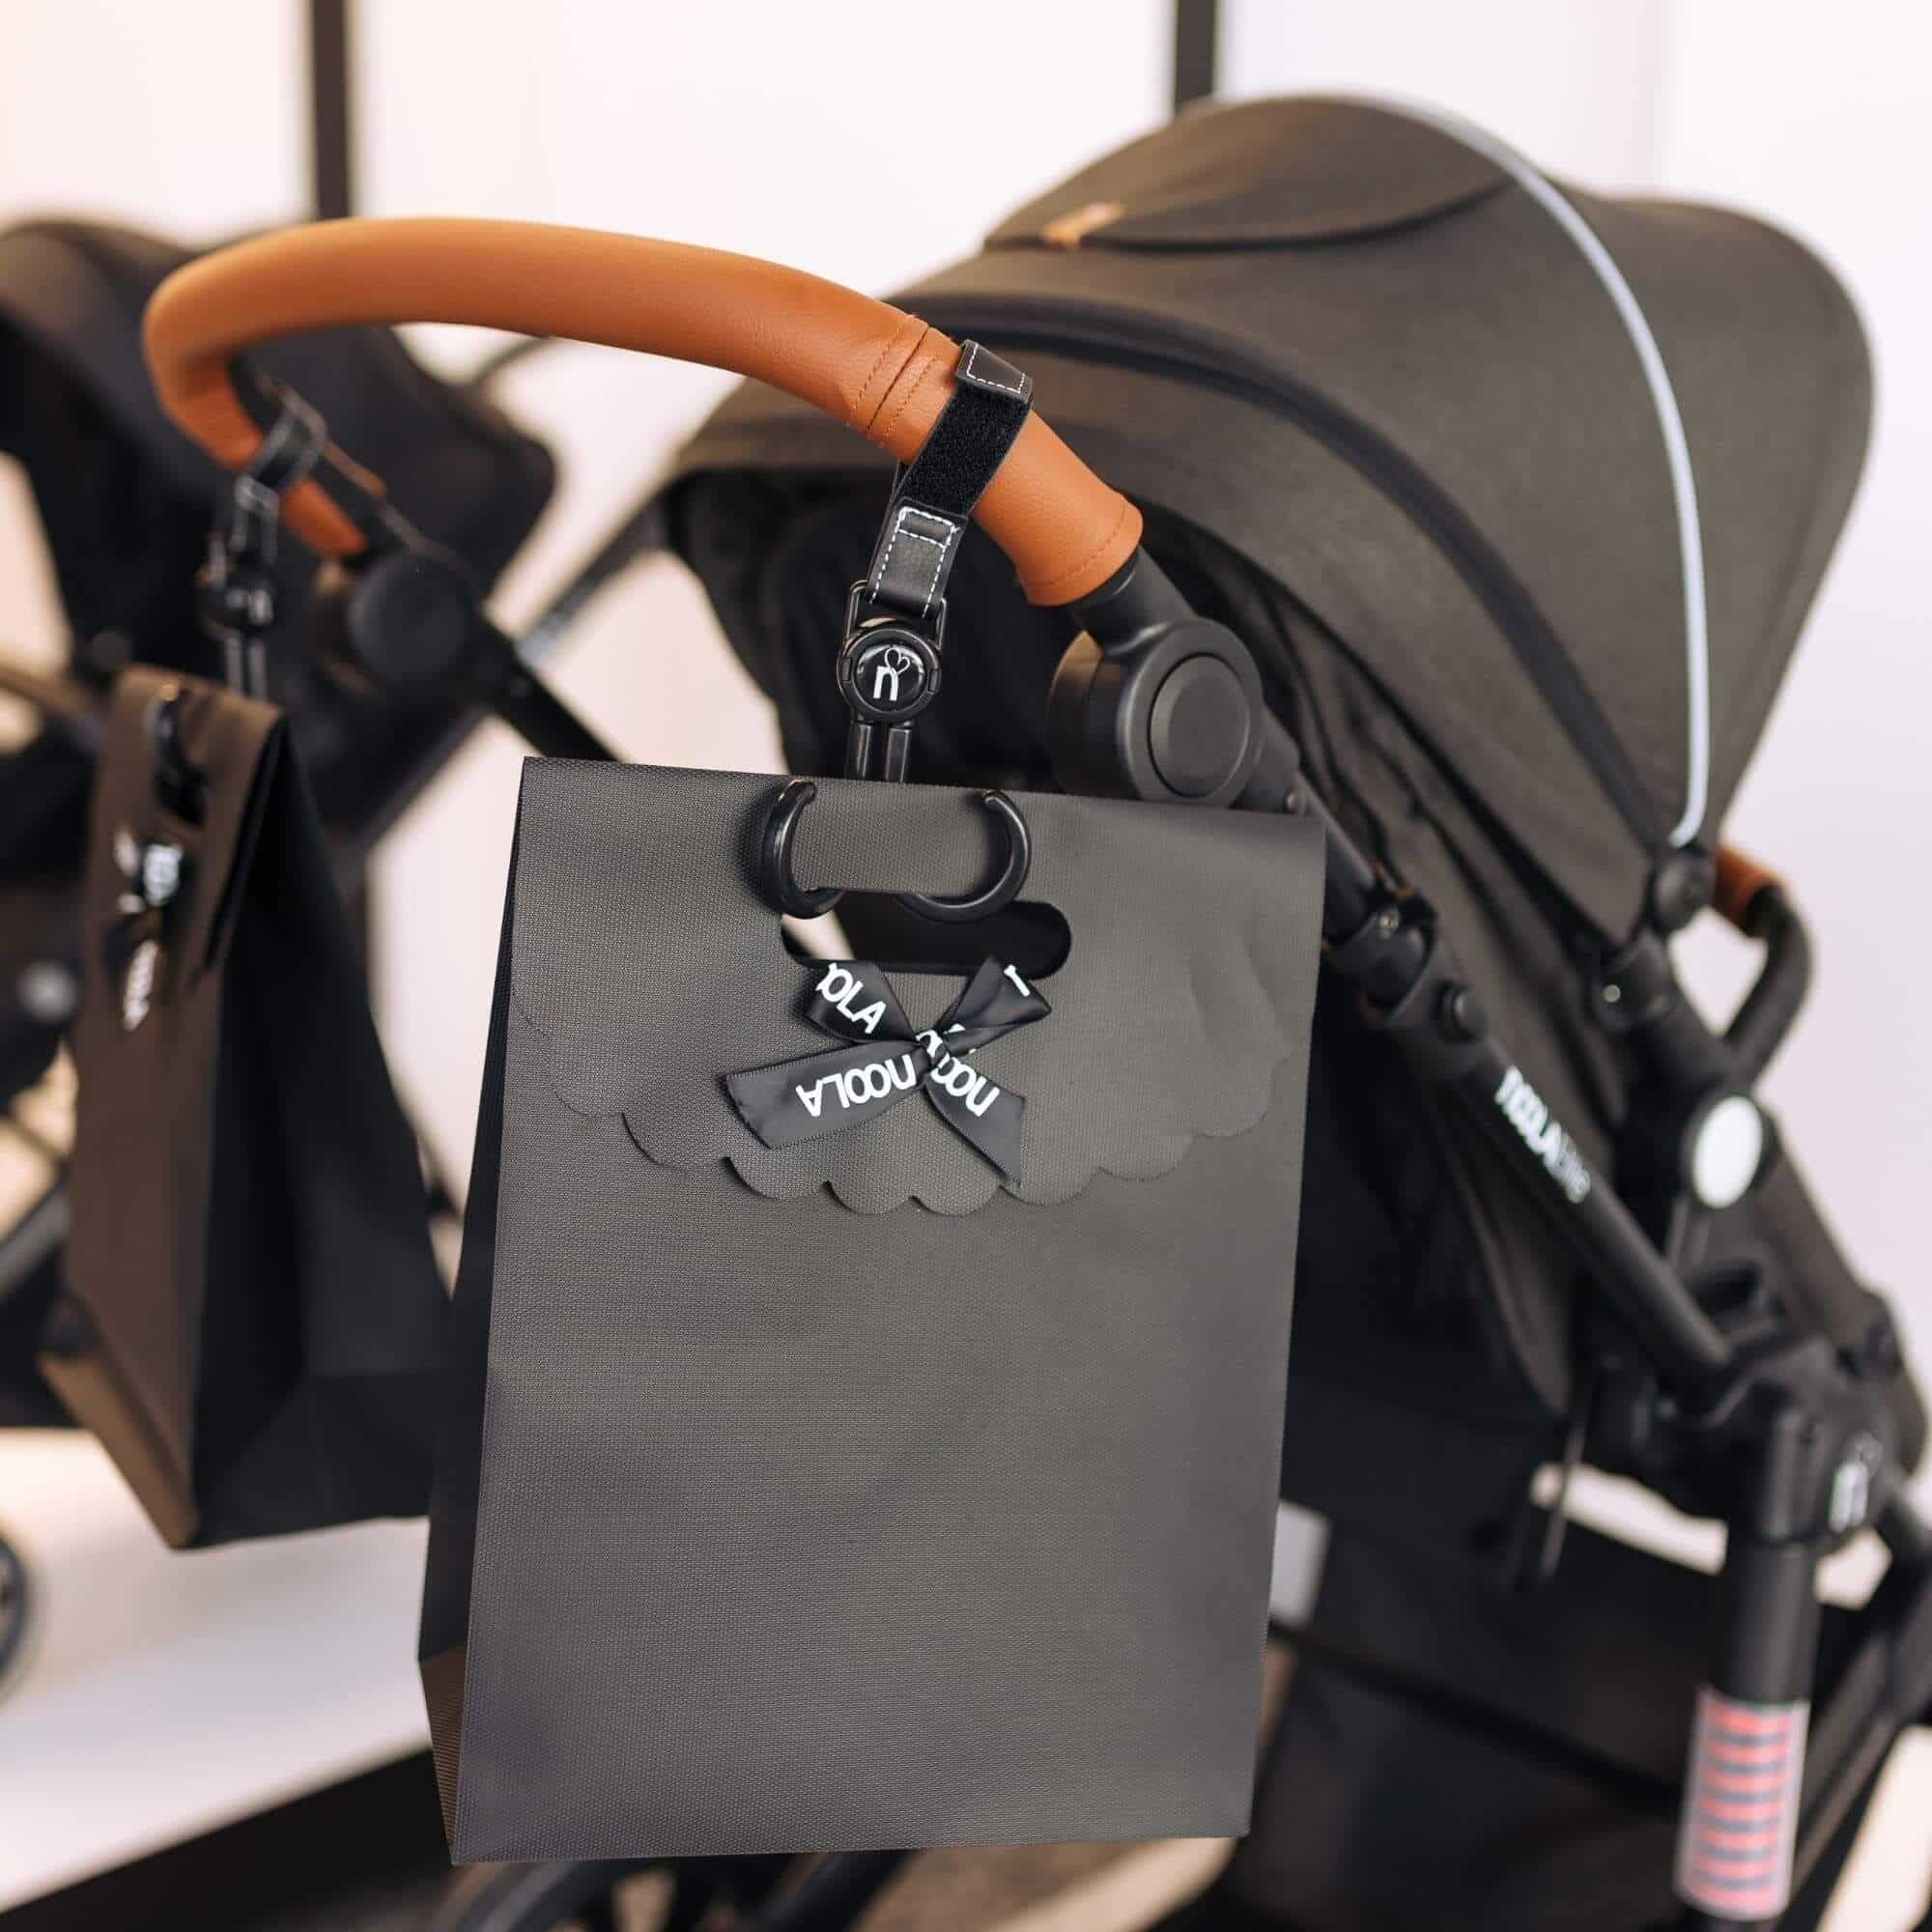 noola double duty stroller hooks accessory